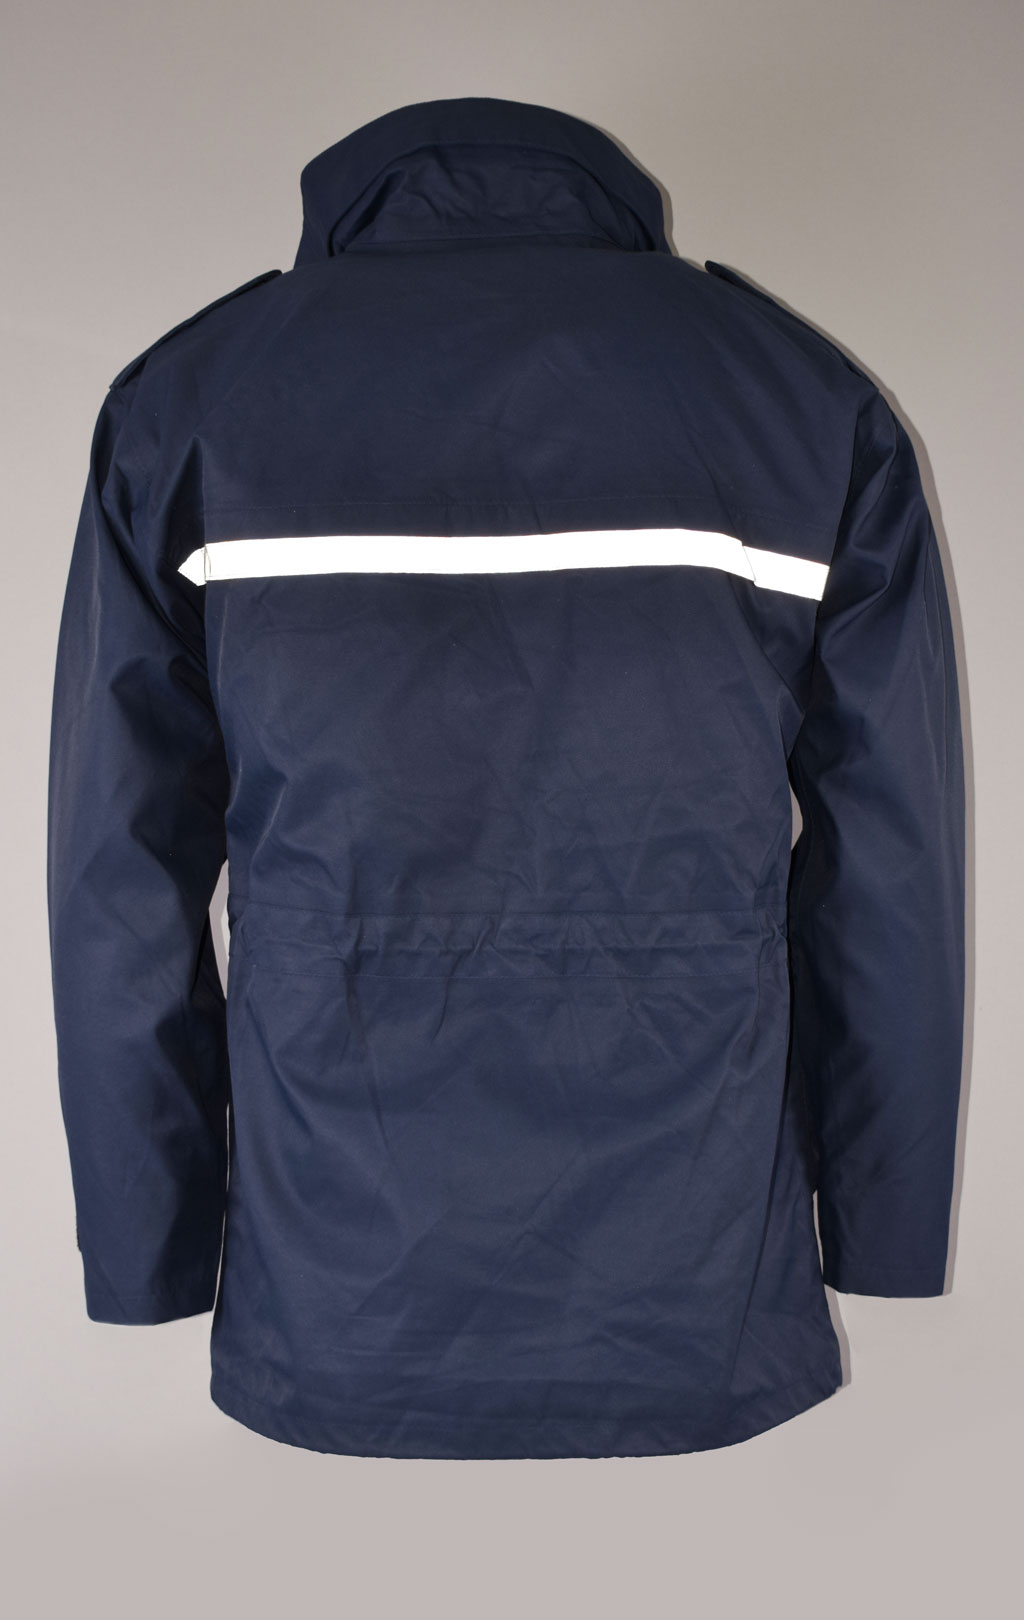 Куртка непромокаемая Gore-Tex RAF Gore-Tex с подстёжкой navy Англия